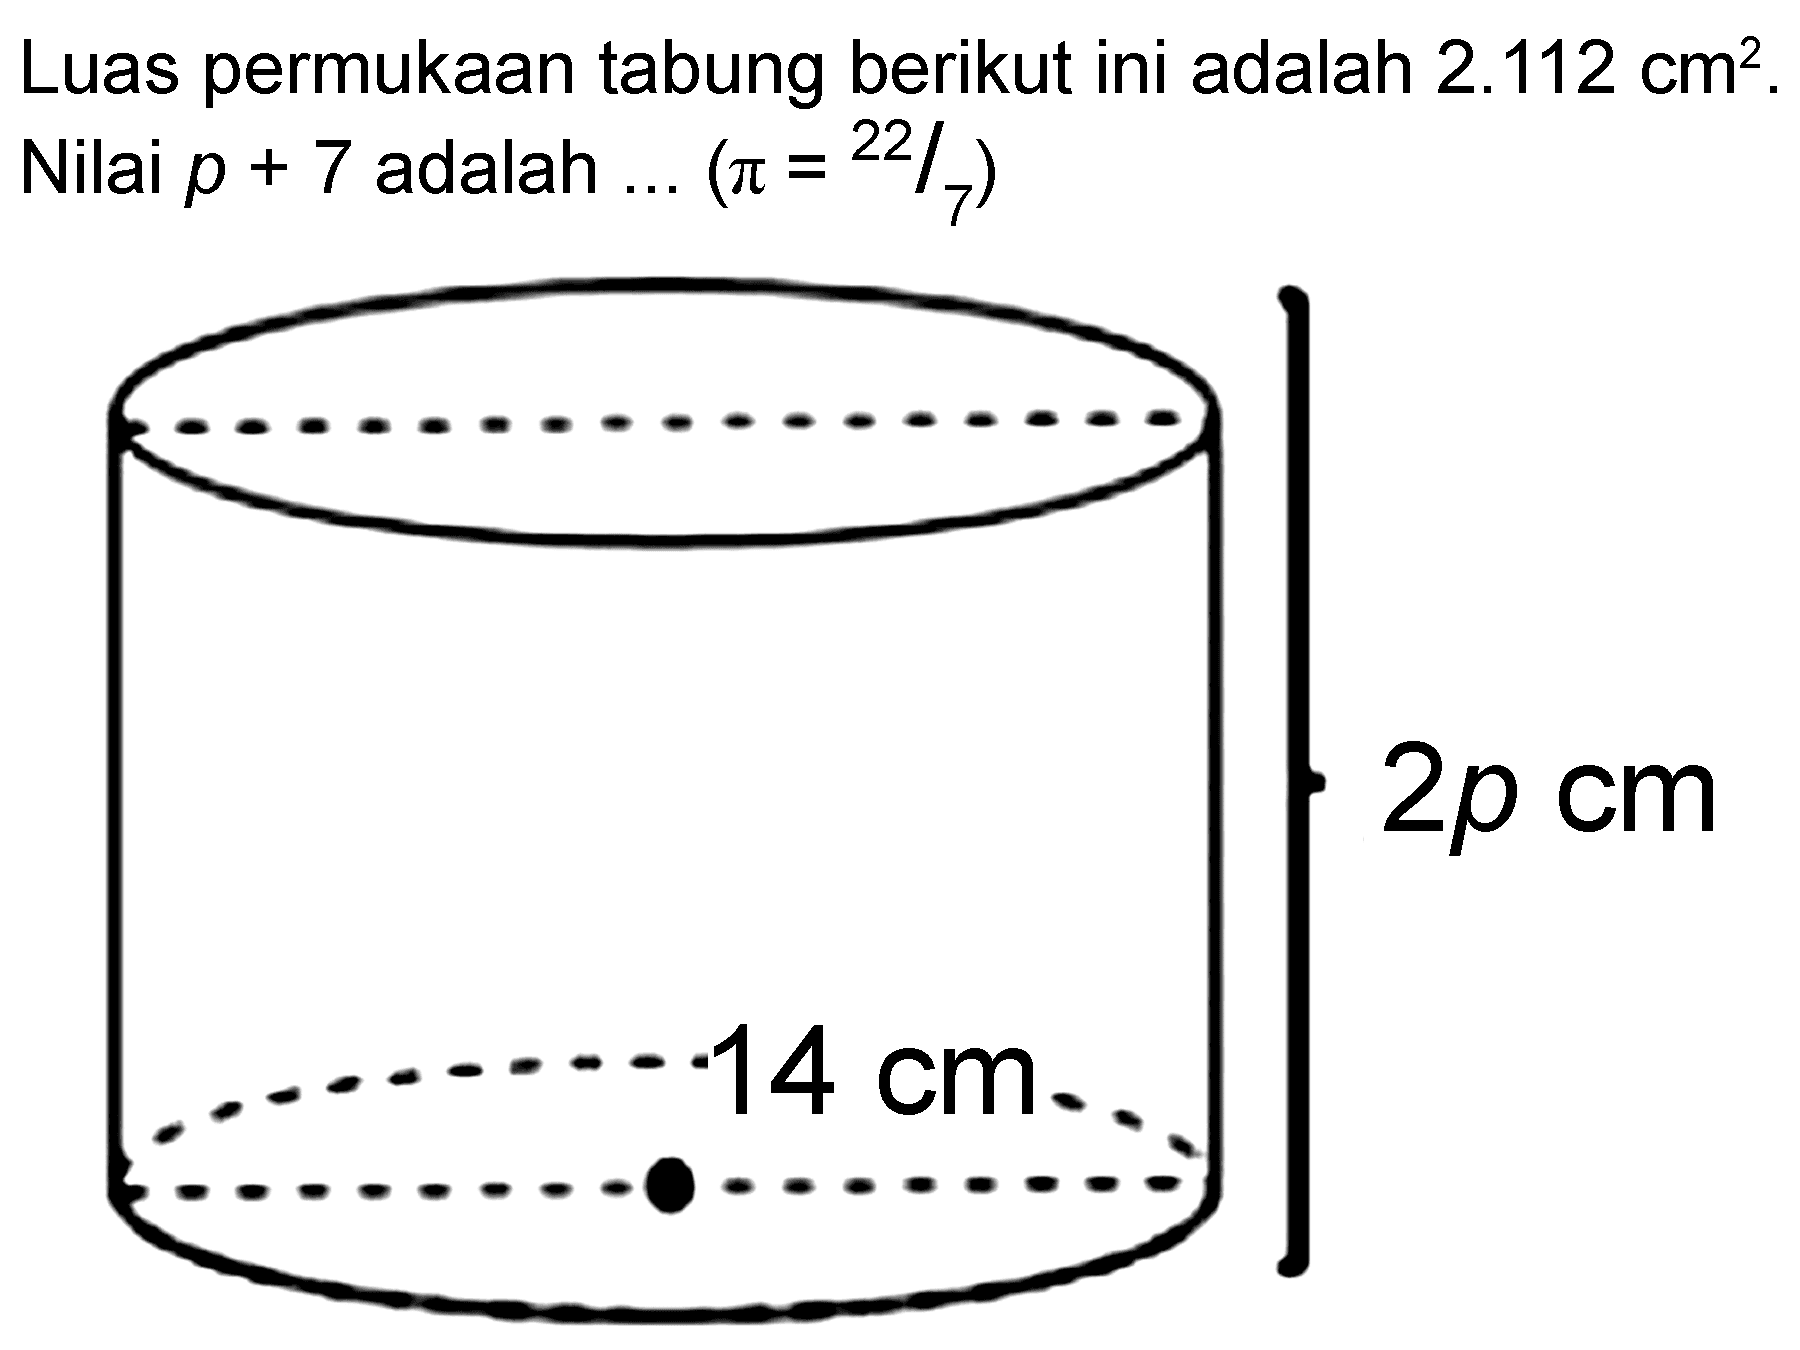 Luas permukaan tabung berikut ini adalah  2.112 cm^2 . 
Nilai  p+7  adalah ...  (pi=22/7) 